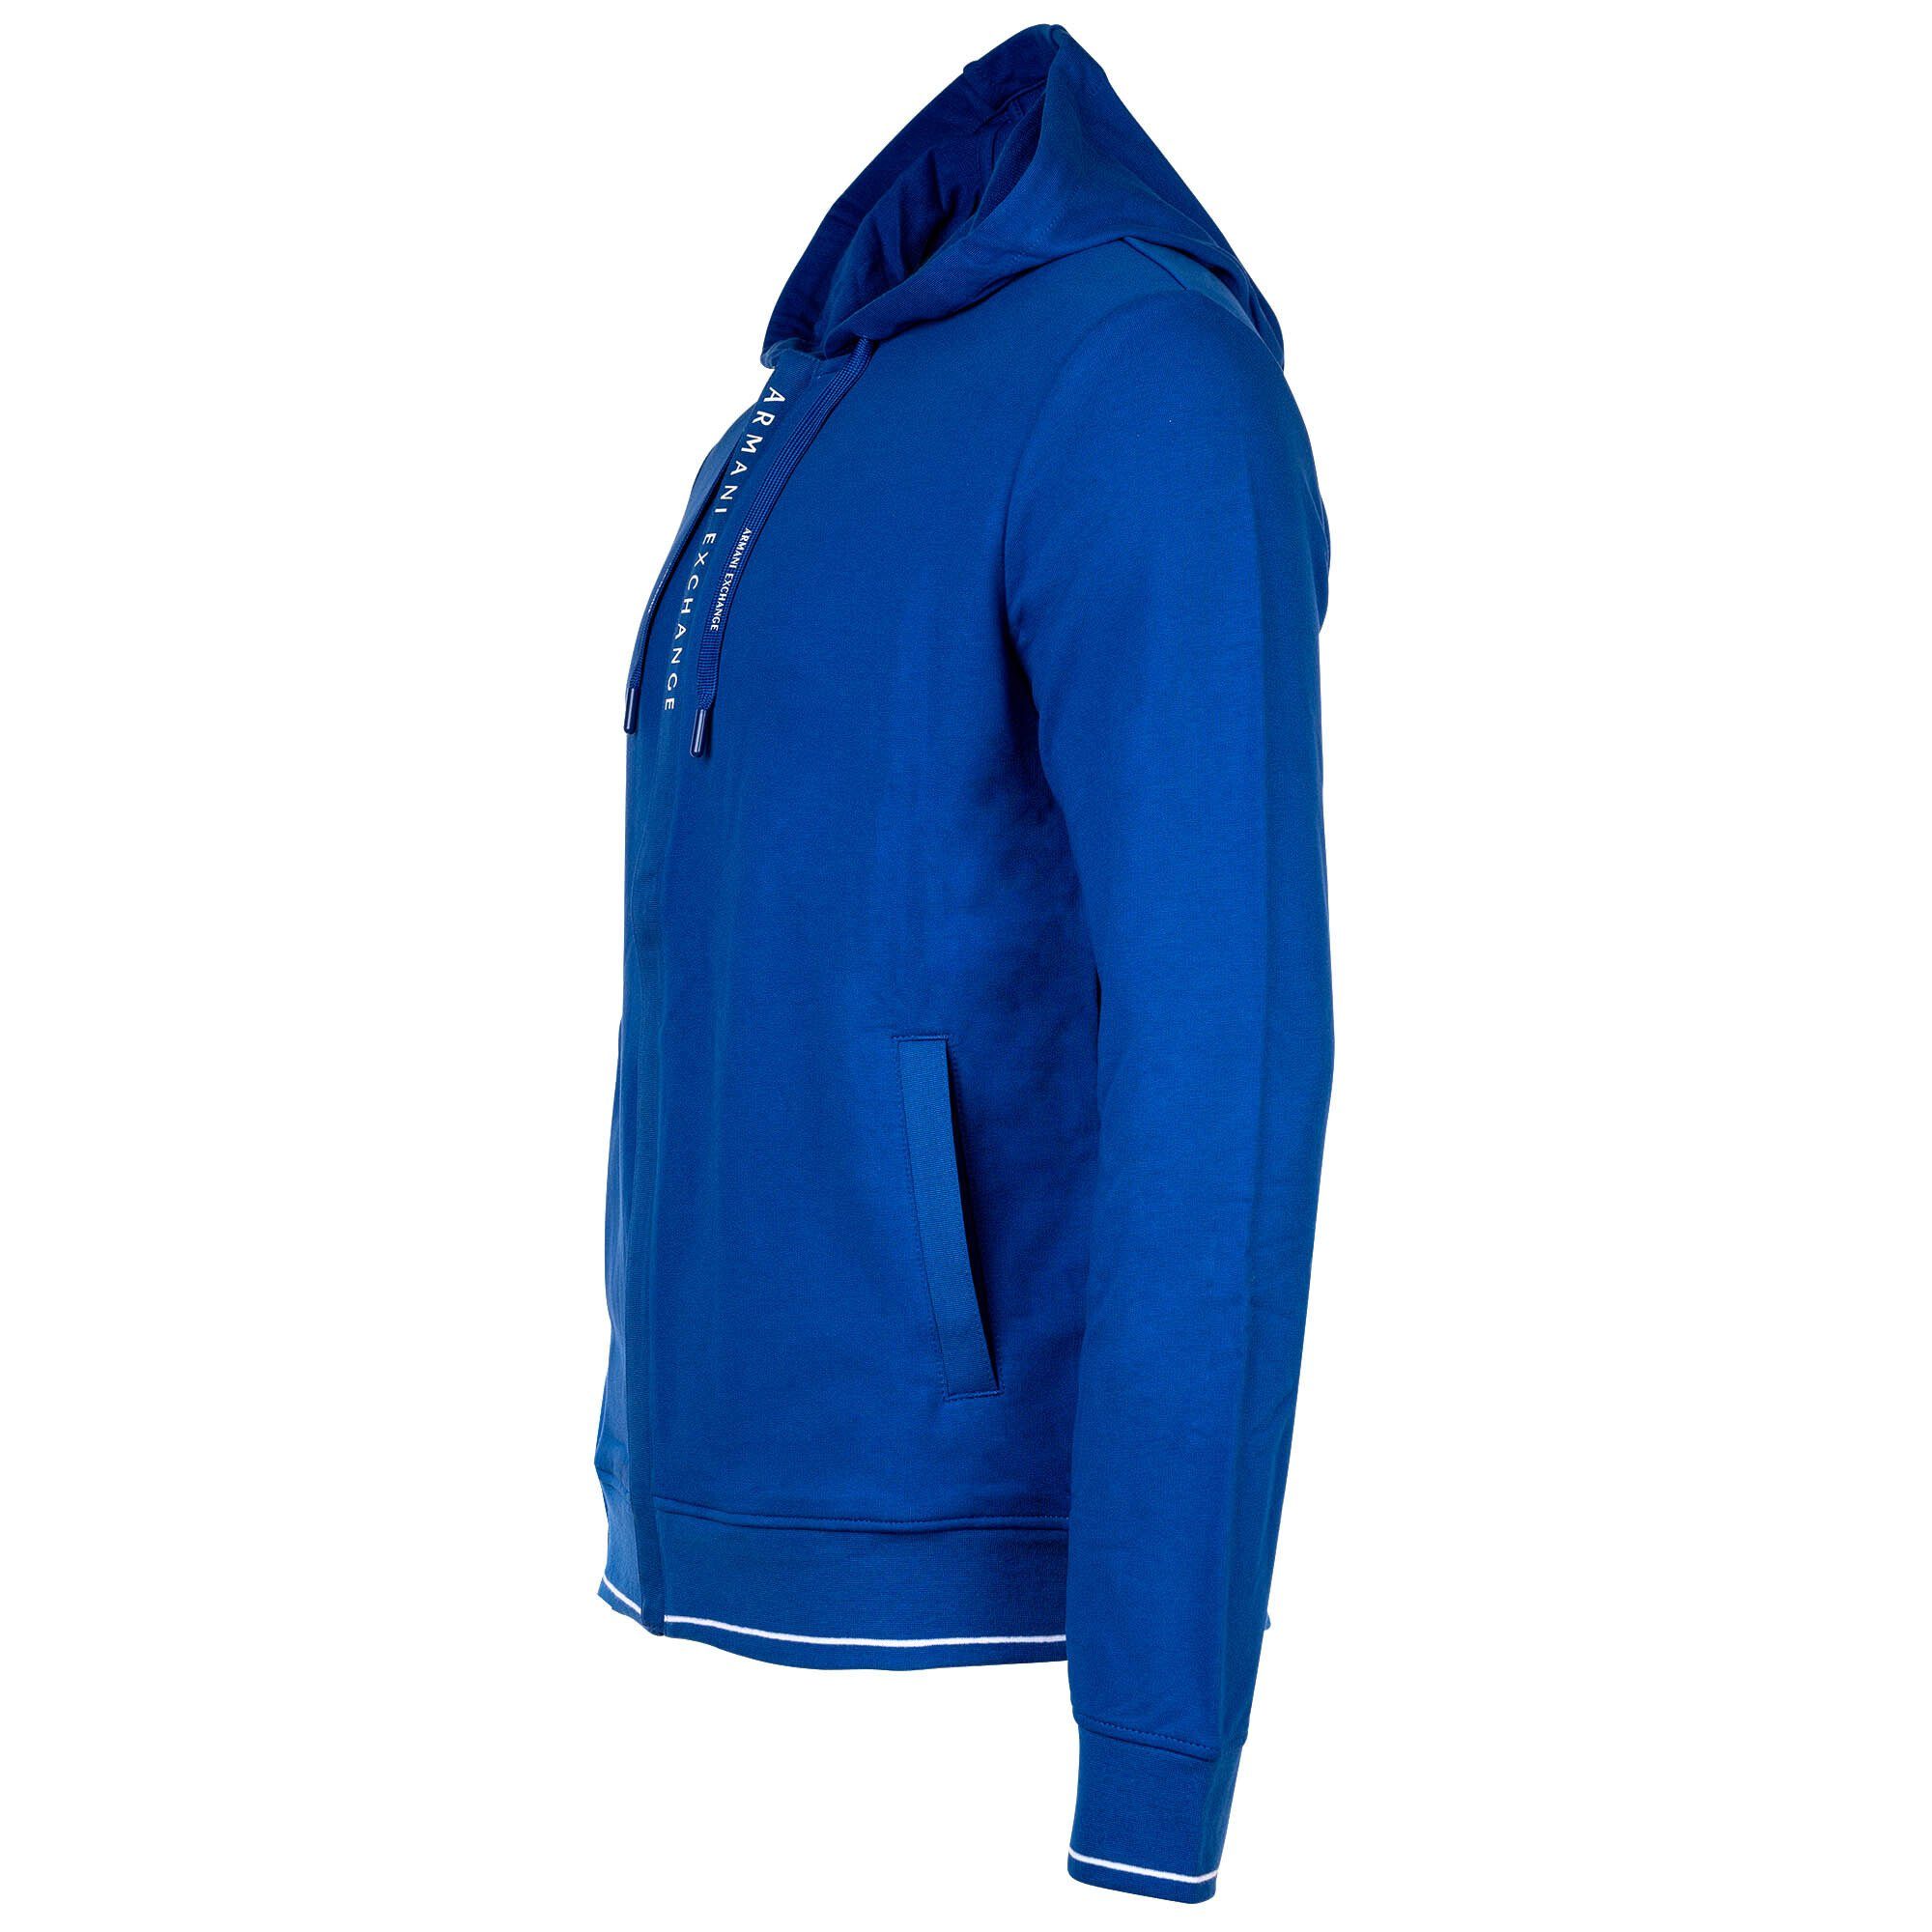 Sweatshirt Baumwolle, ARMANI Jacke Blau Sweatshirtjacke, - Logo EXCHANGE Herren